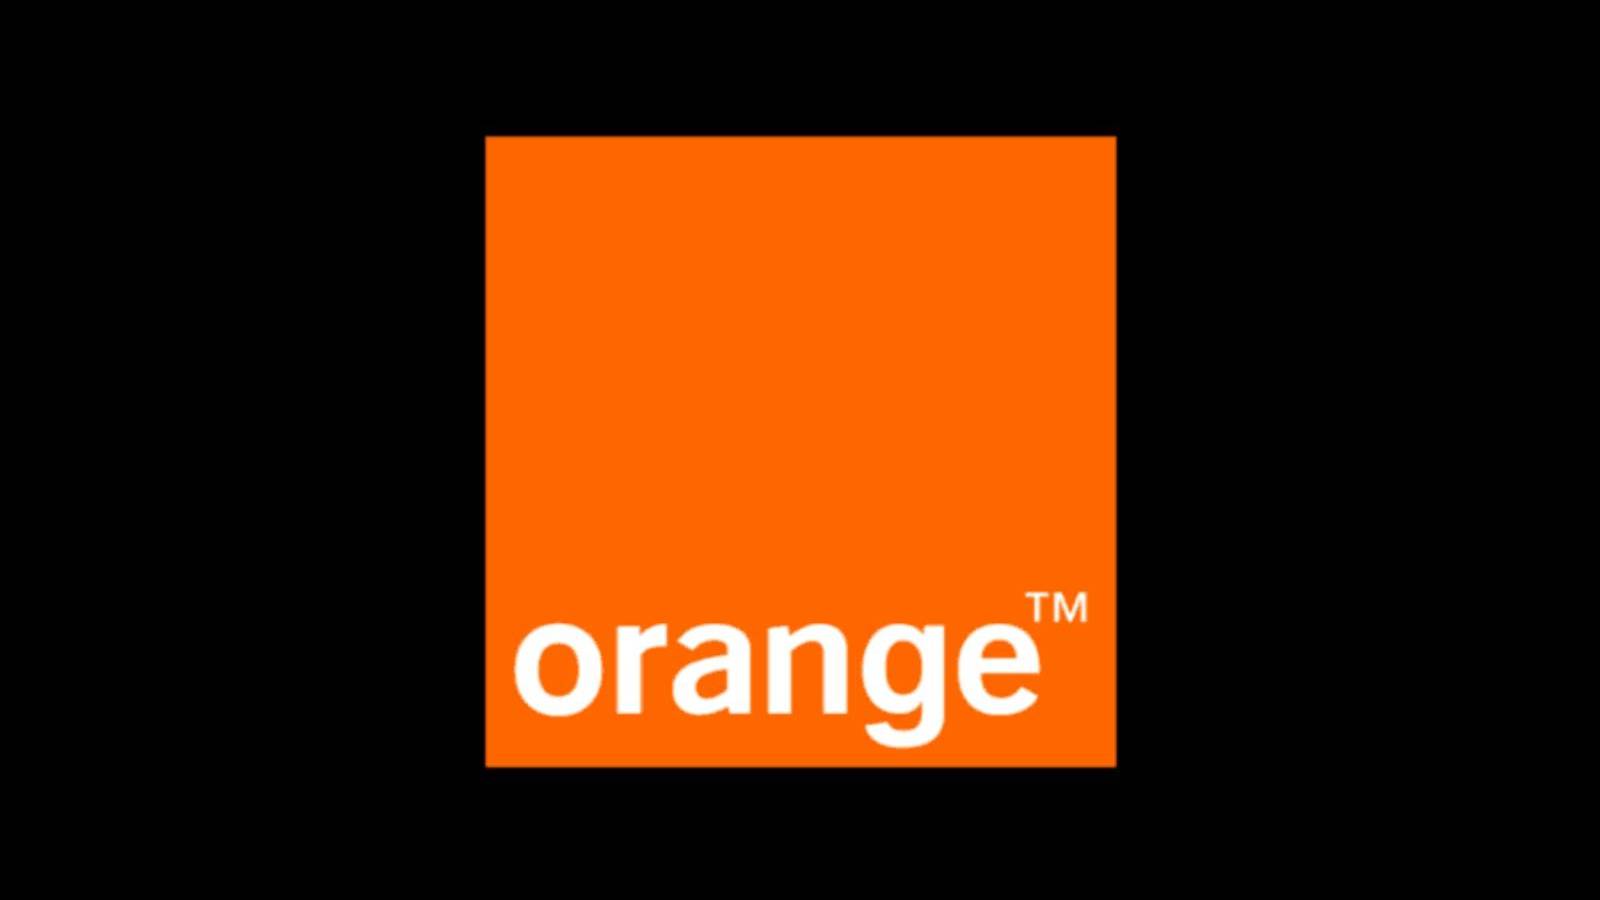 Orange annoncerer det nye EØS-roamingtilbud til rumænske kunder